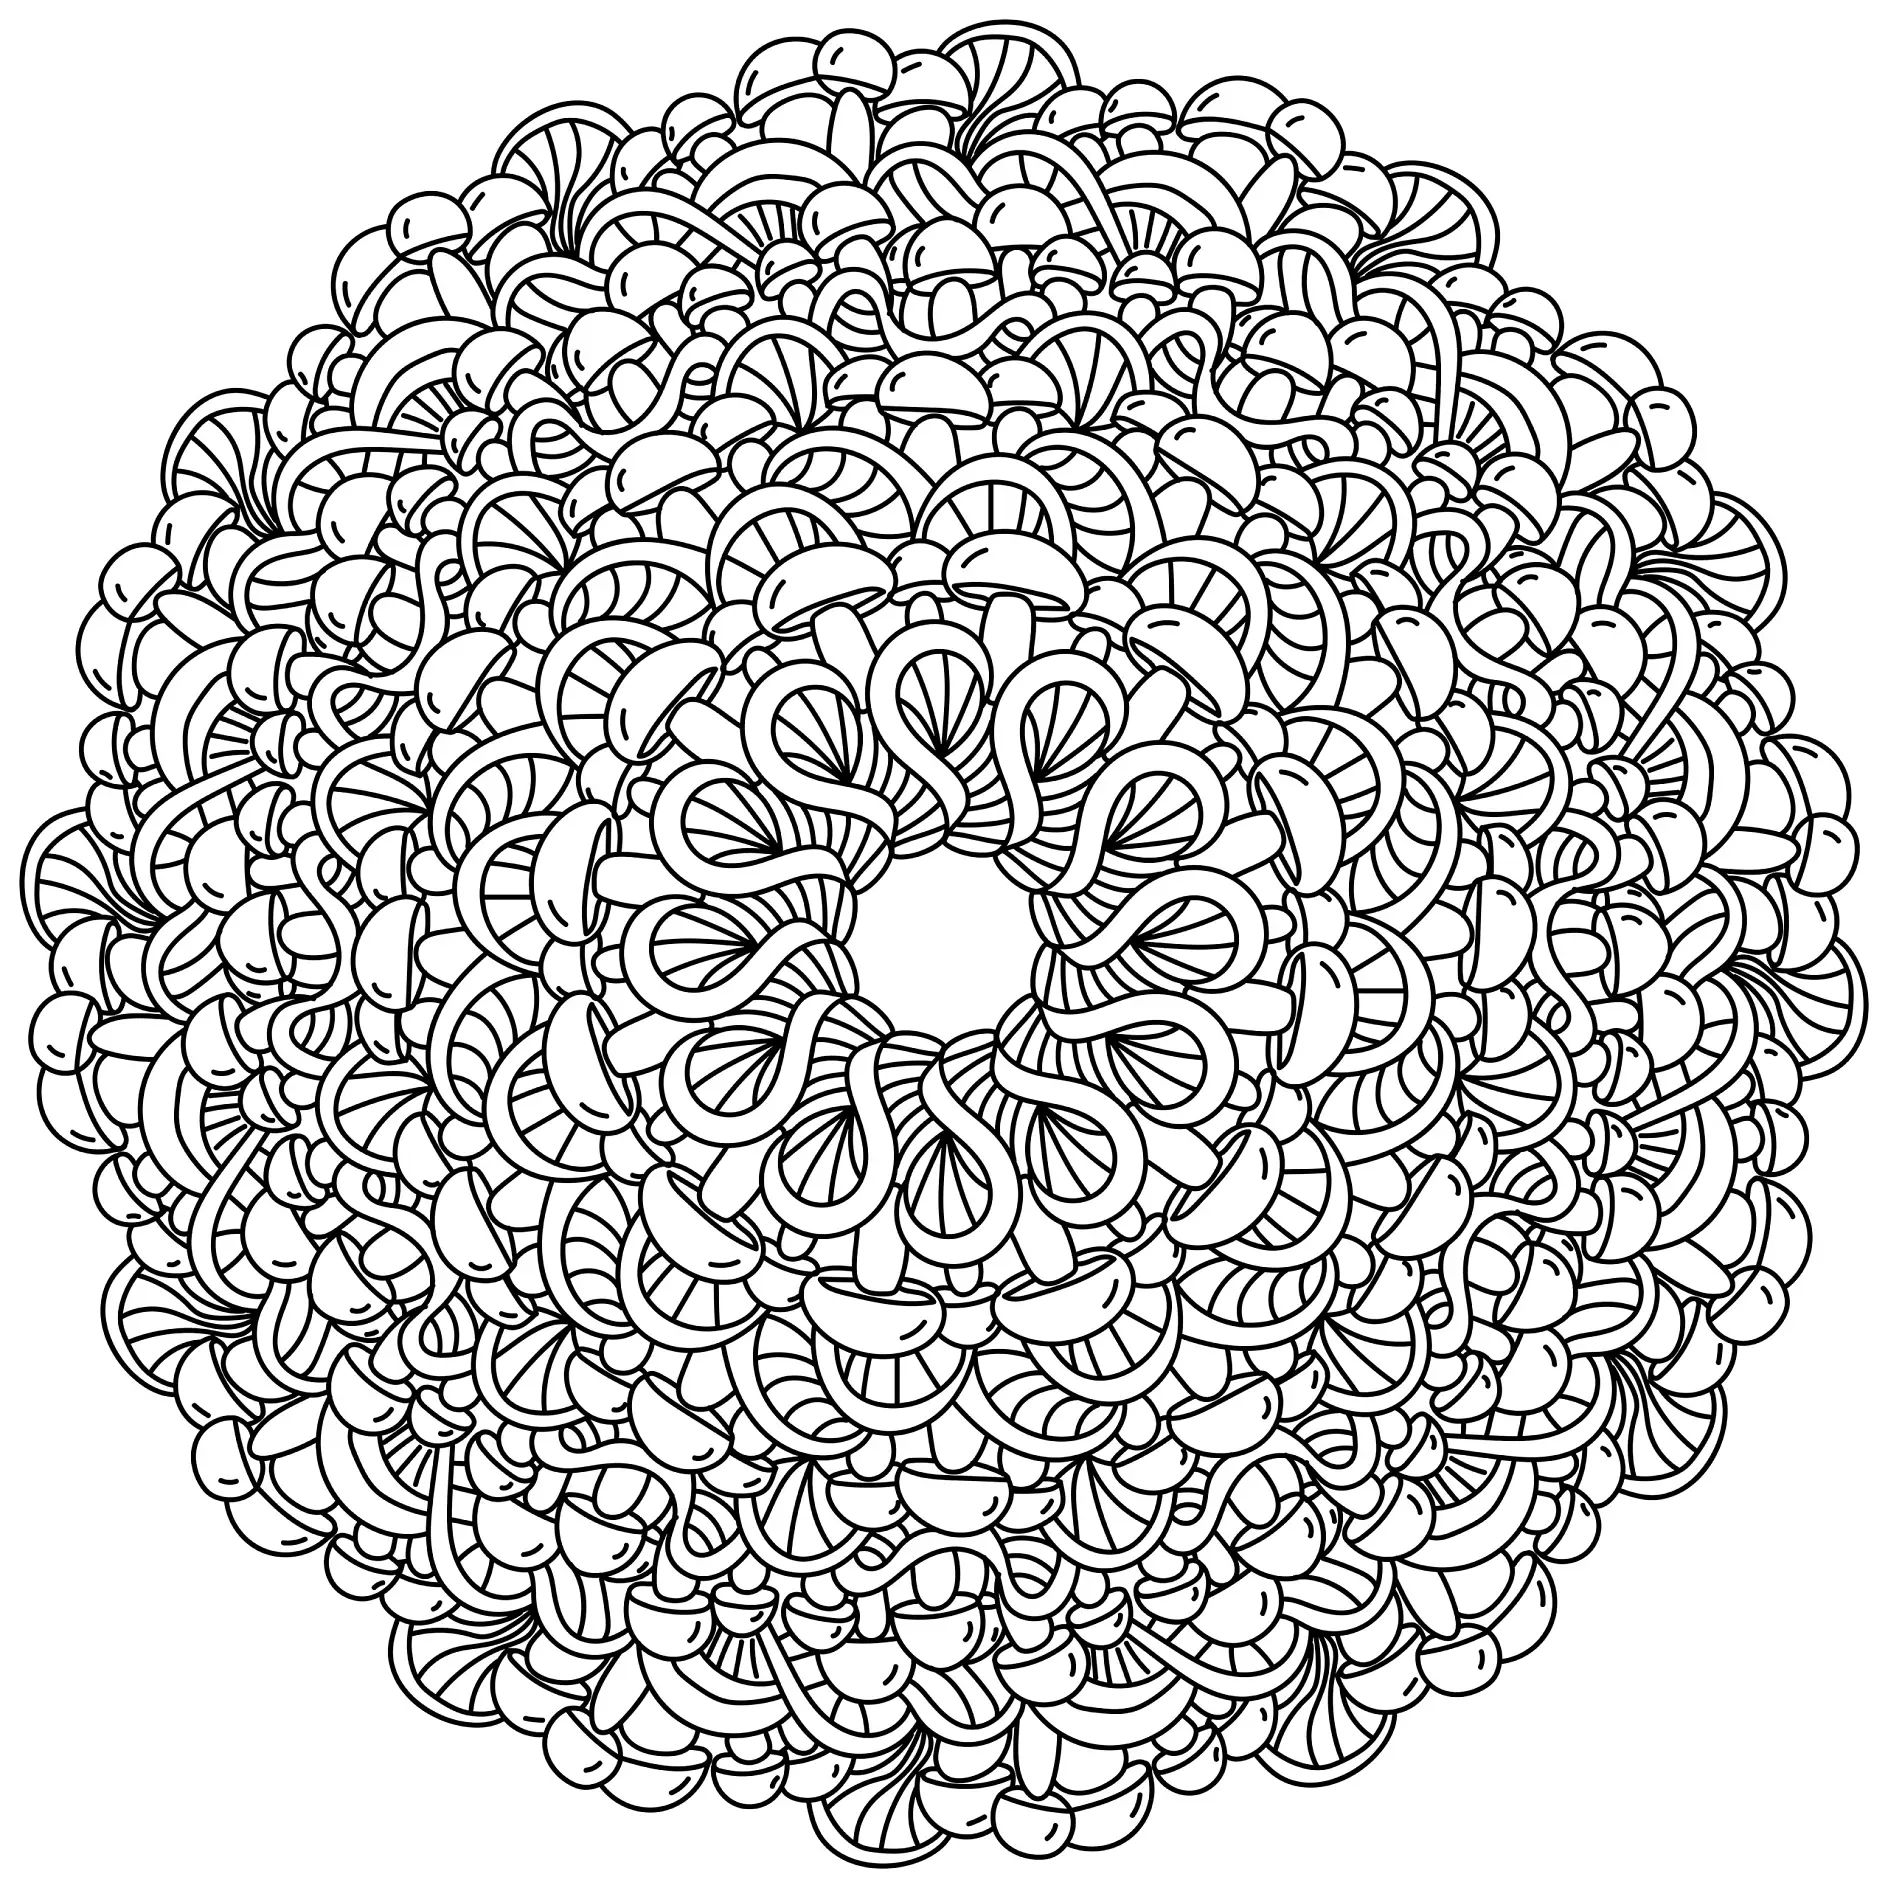 Ausmalbild Mandala mit verschlungenen Mustern und floralen Elementen